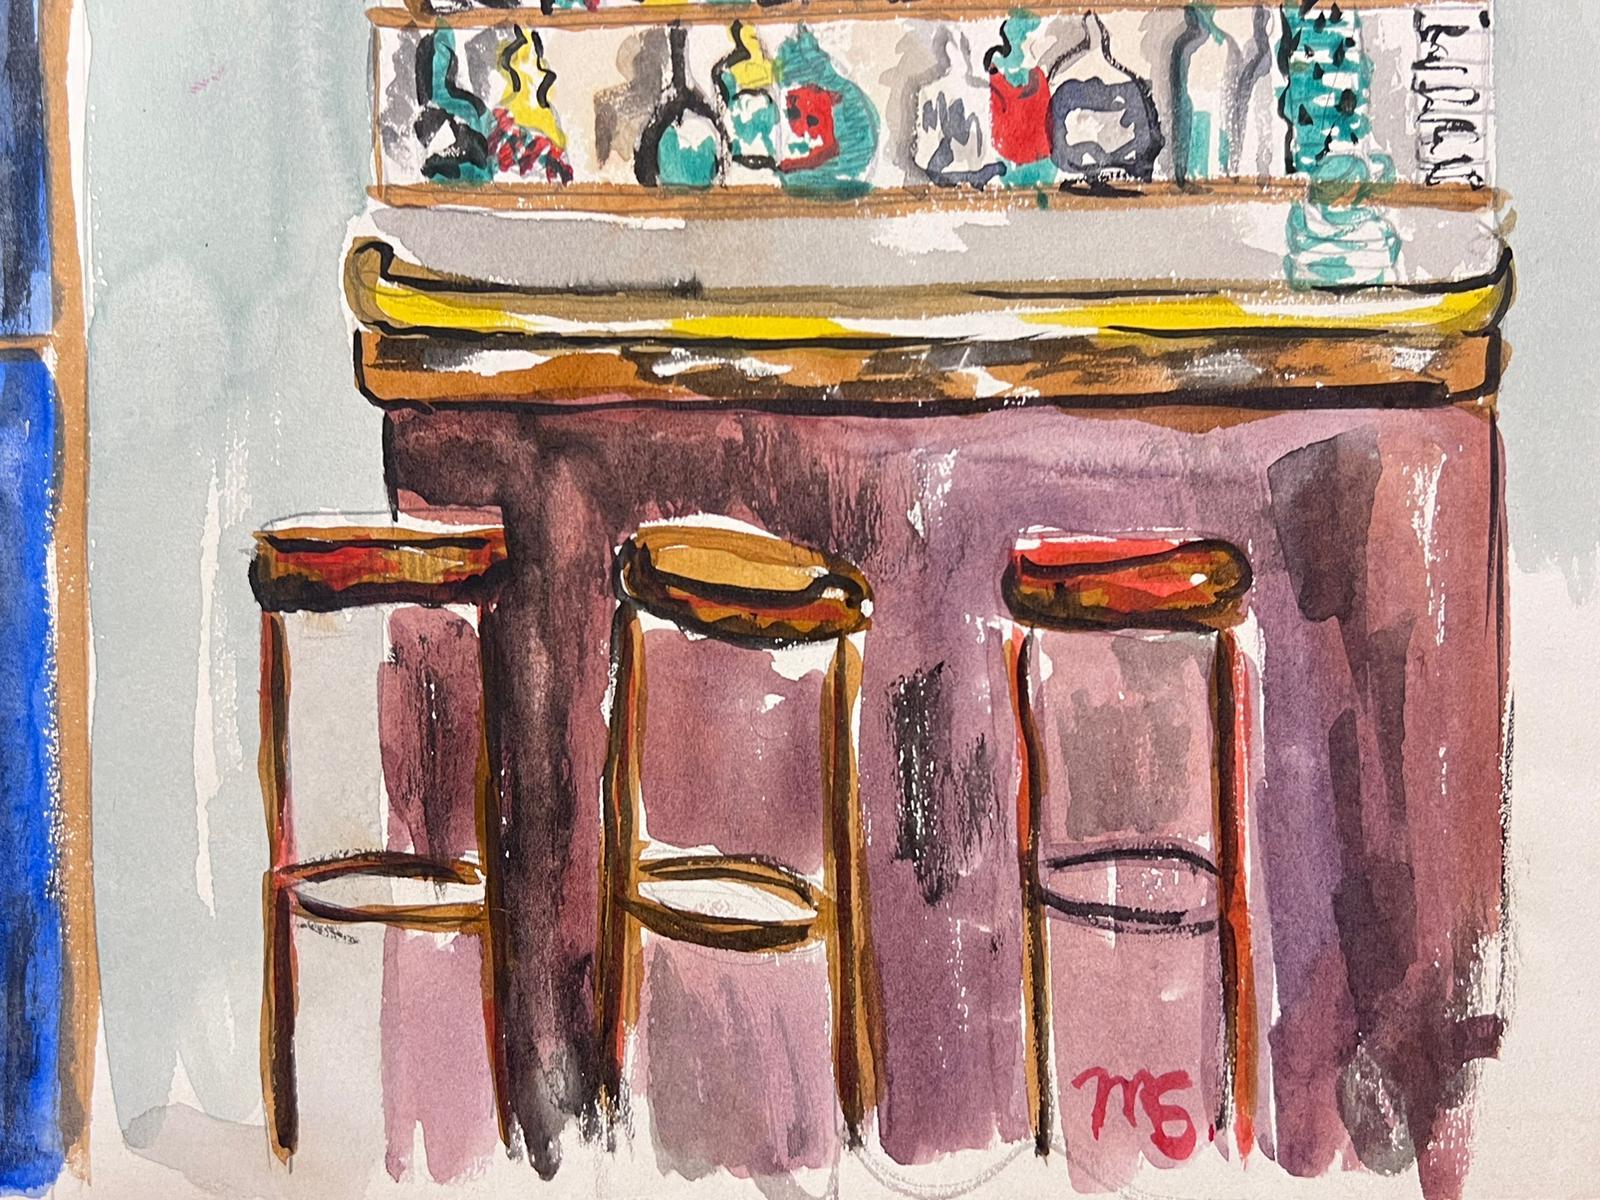 Französische Bar
Original-Aquarell auf Künstlerpapier
unterzeichnet von Marjorie Schiele (1913-2008) *siehe Anmerkungen unten
ein Blatt Papier ist 9,5 x 12,5 Zoll groß
In gutem Zustand
Herkunft: aus einer Privatsammlung in Paris

Schiele,  wurde in